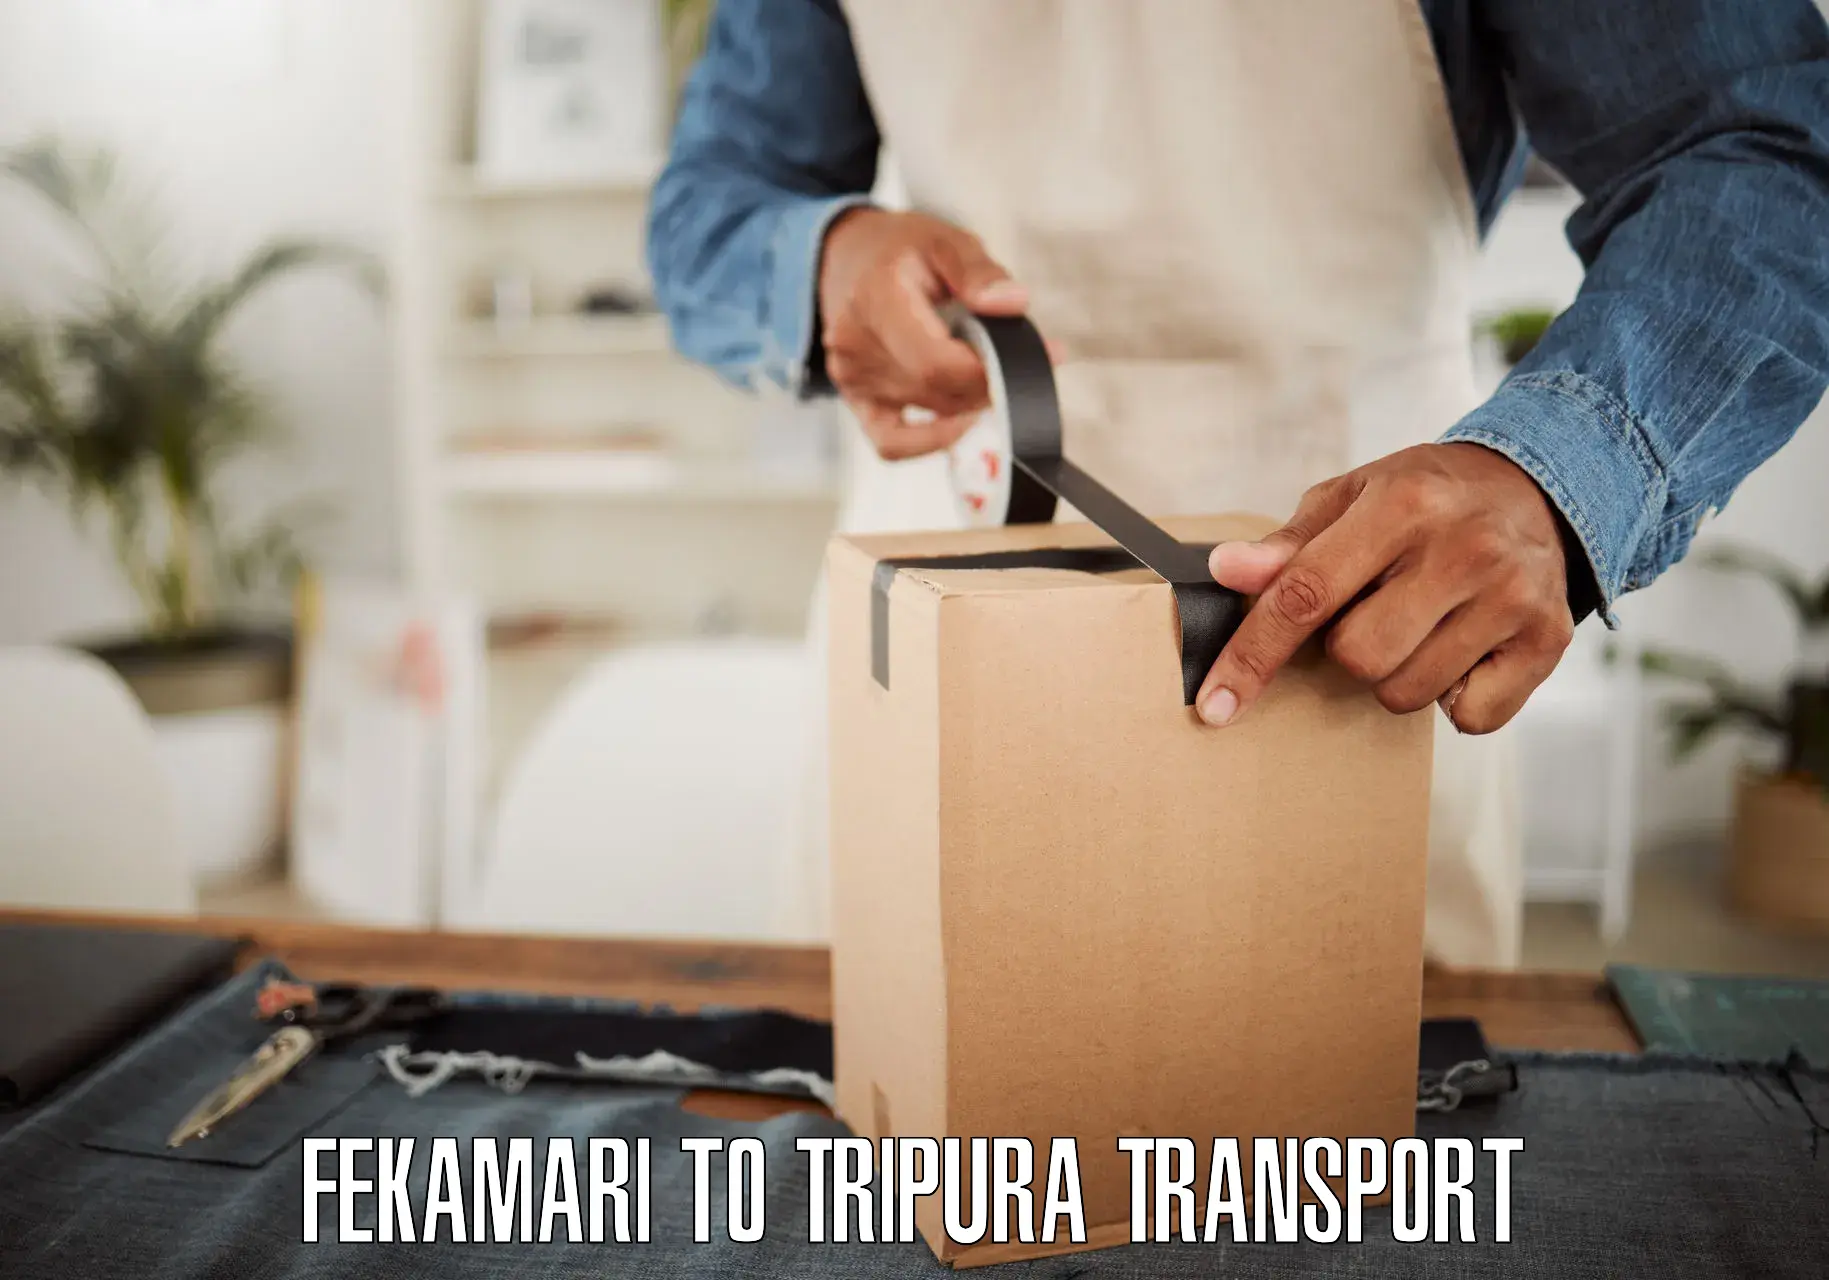 Transport in sharing Fekamari to IIIT Agartala